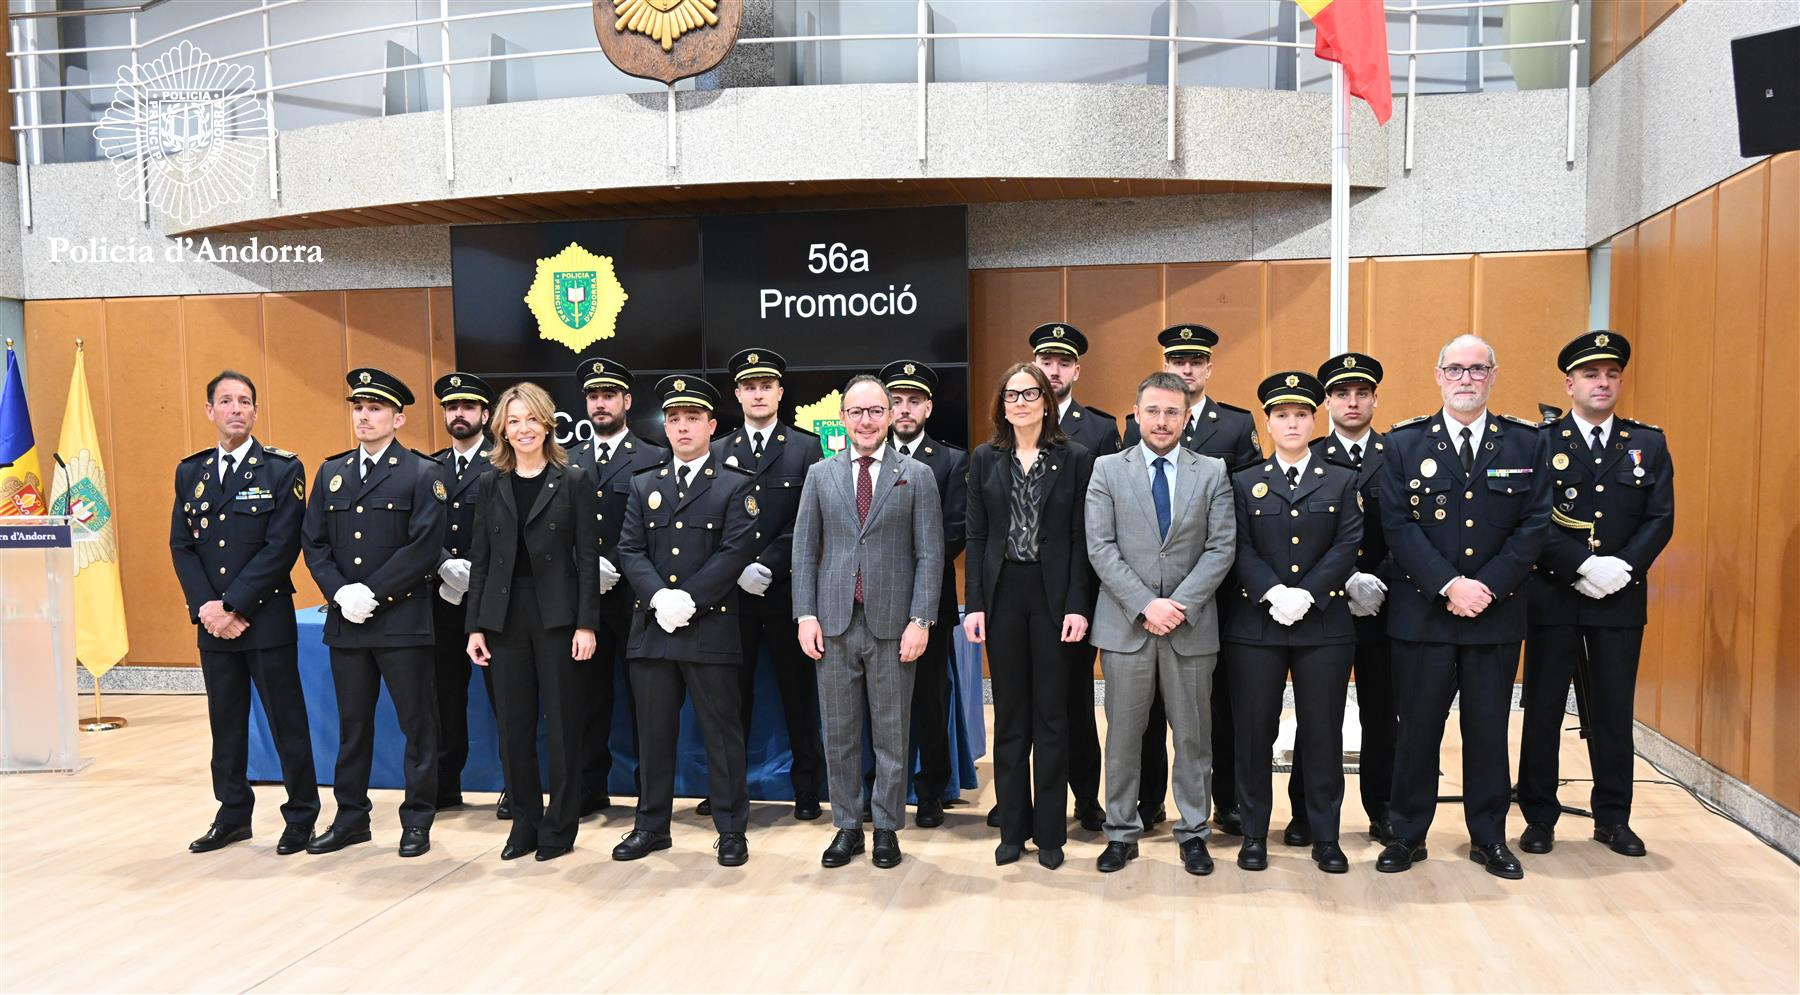 La promoció 56 d’agents de policia celebra la cerimònia de jurament i nomenament definitiu